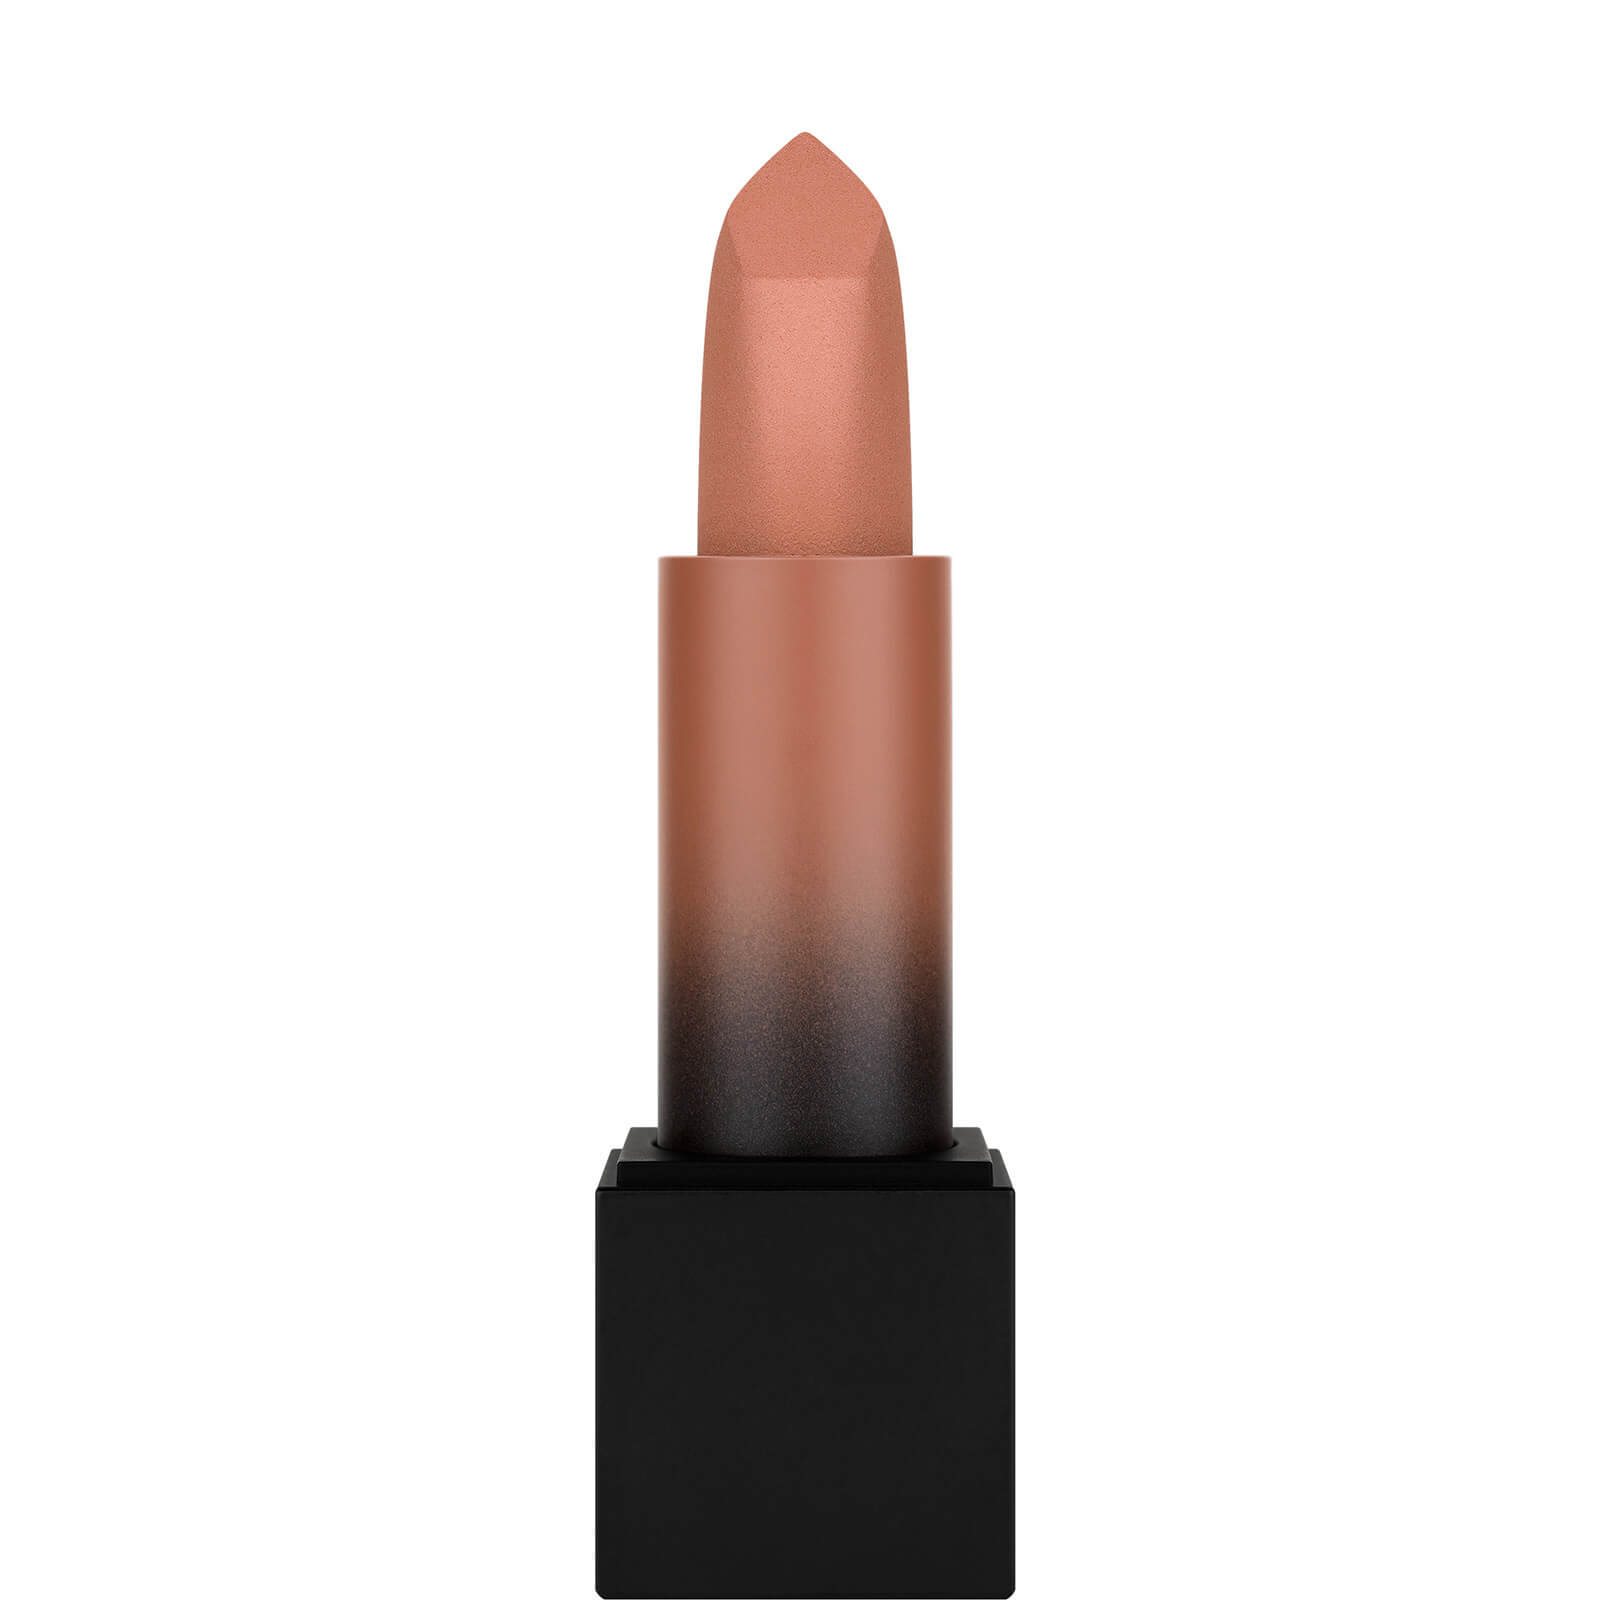 Photos - Lipstick & Lip Gloss Huda Beauty Power Bullet Matte Lipstick - Anniversary 